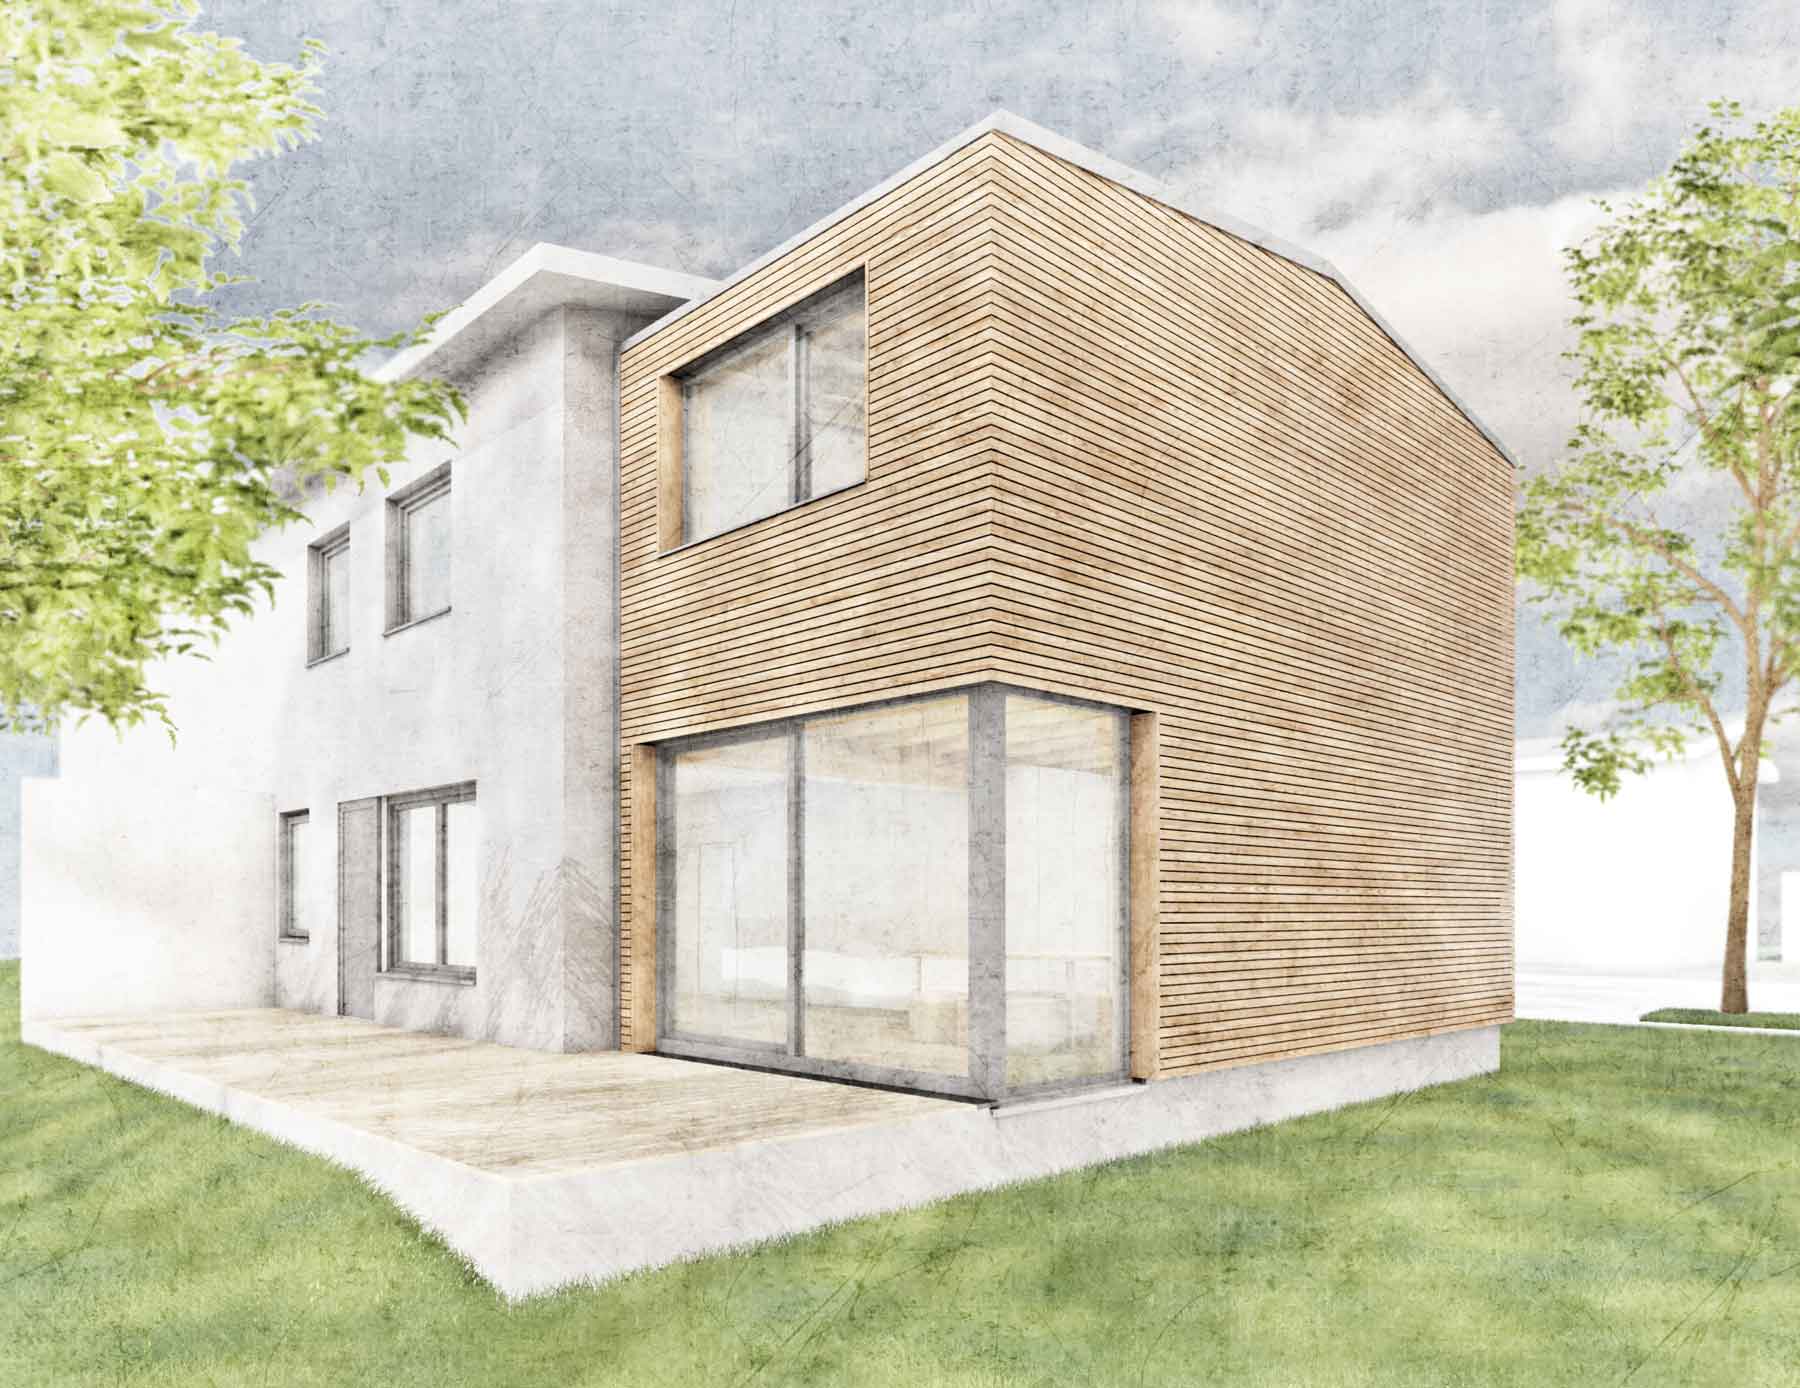 Gartenperspektive - Anbau aus Holz | An- und Umbau einer Doppelhaushälfte für eine Familie | Konstruktiver Holzbau mit Fassade aus Lärchenholz in Berlin